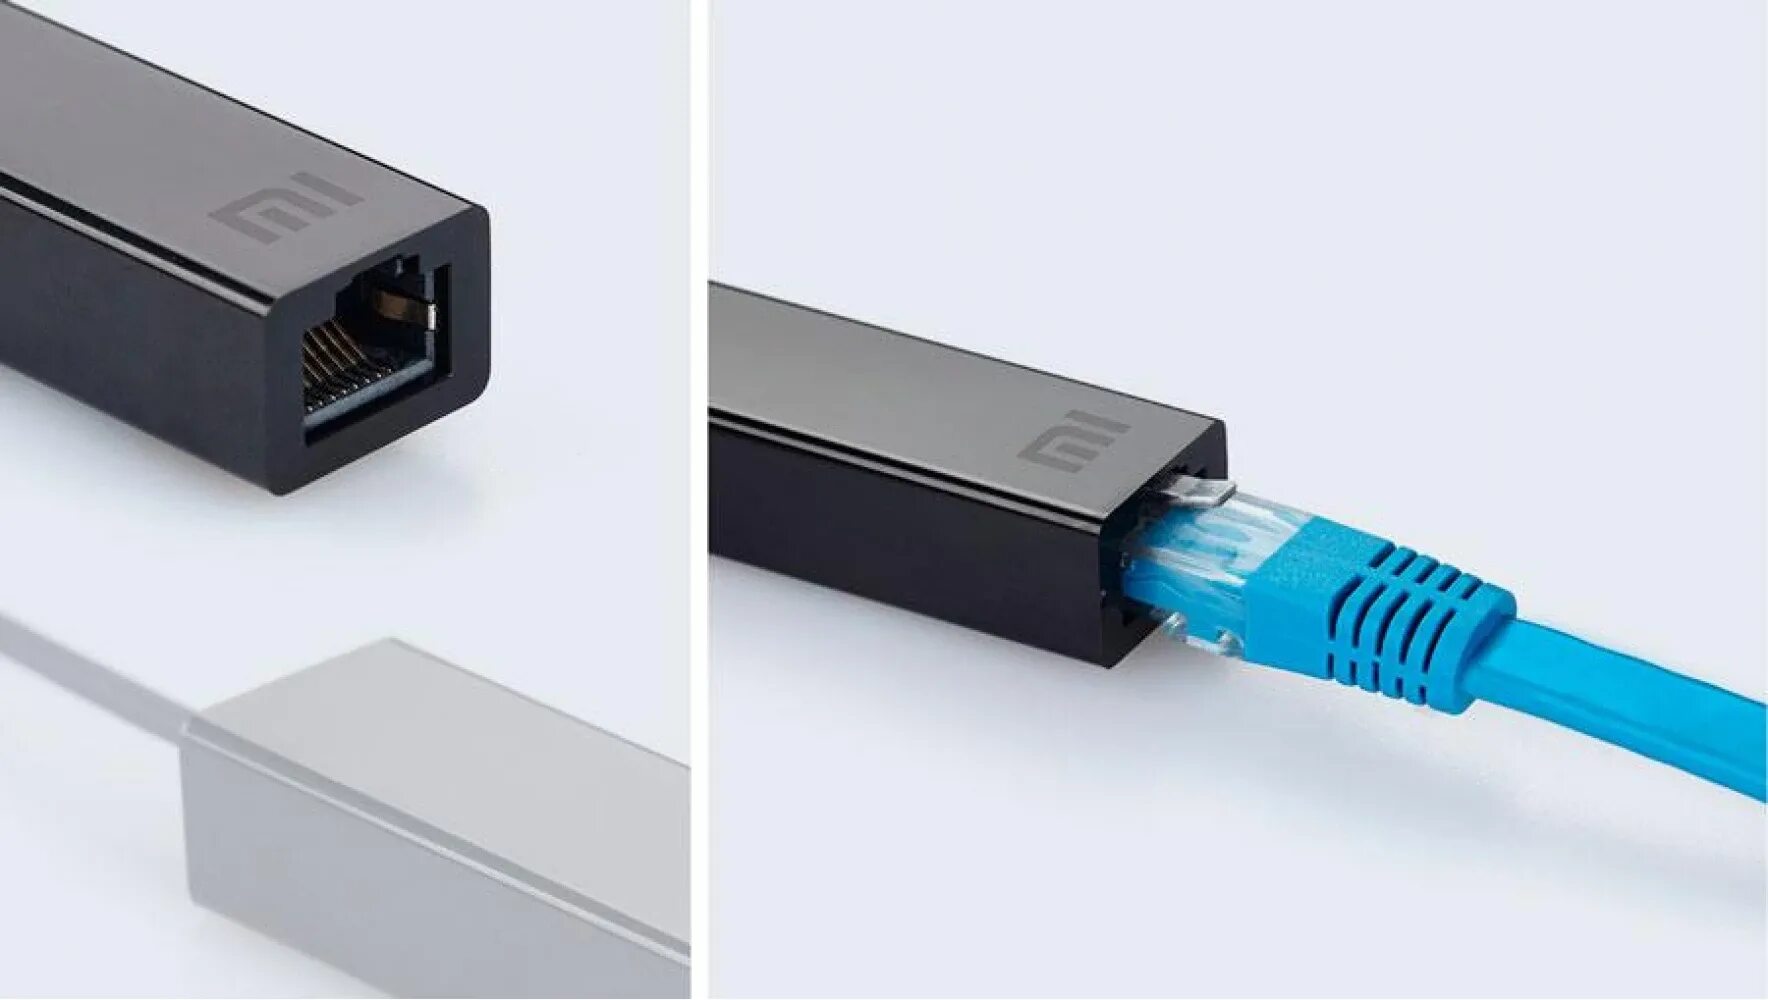 USB lan rj45 адаптер для модема. Переходник USB rj45 Ethernet. Сетевой адаптер lan USB - Ethernet rj45 10/100 Мбит/с 15см. USB 2.0/rj45 10/100m Ethernet.